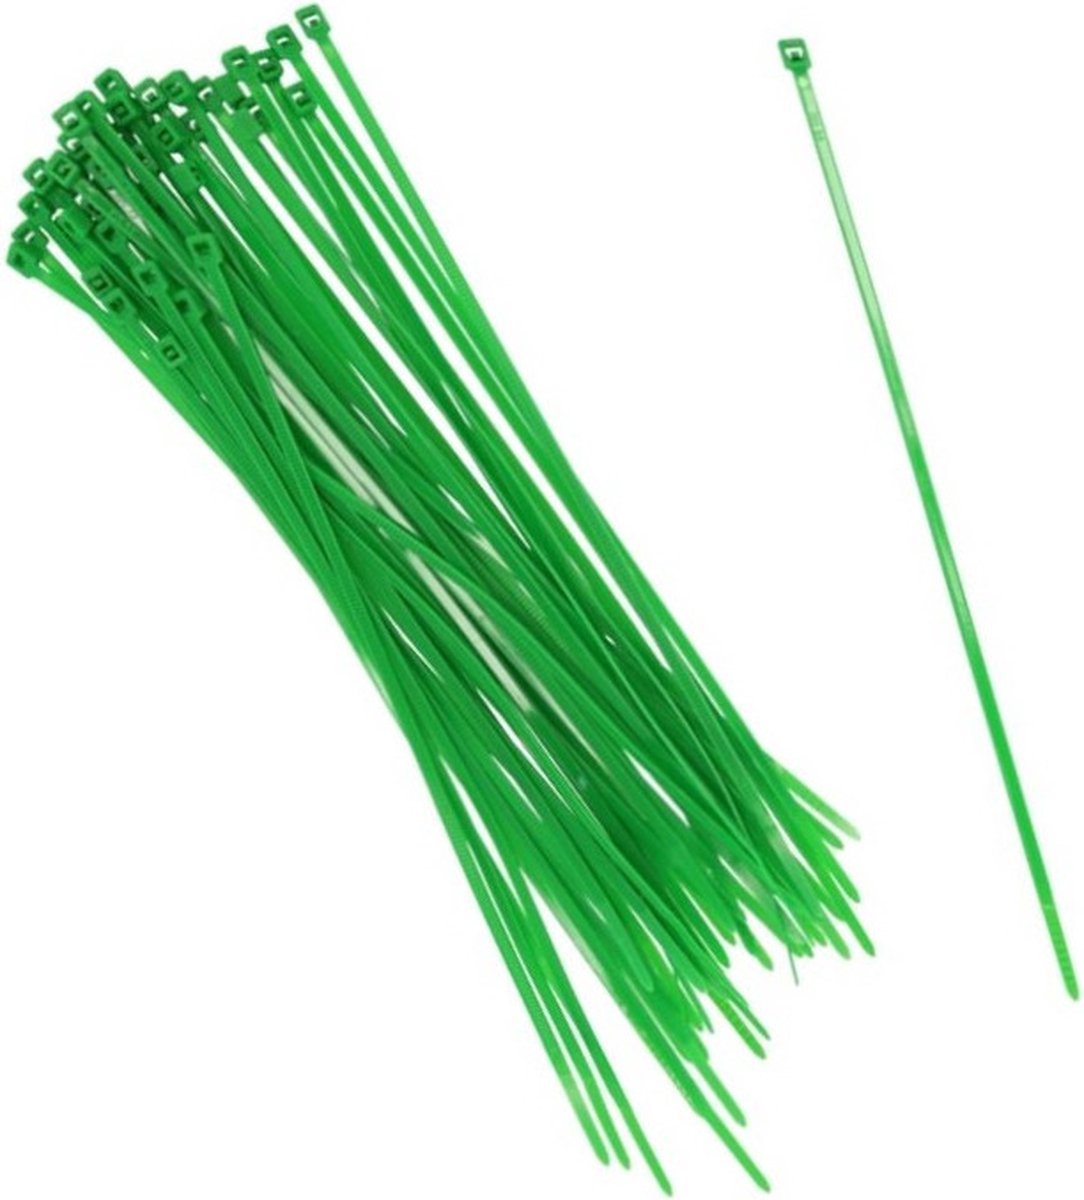 100x stuks Kabelbinders tie-wraps in het groen van 25 cm gemaakt van kunststof - snoeren bindmateriaal